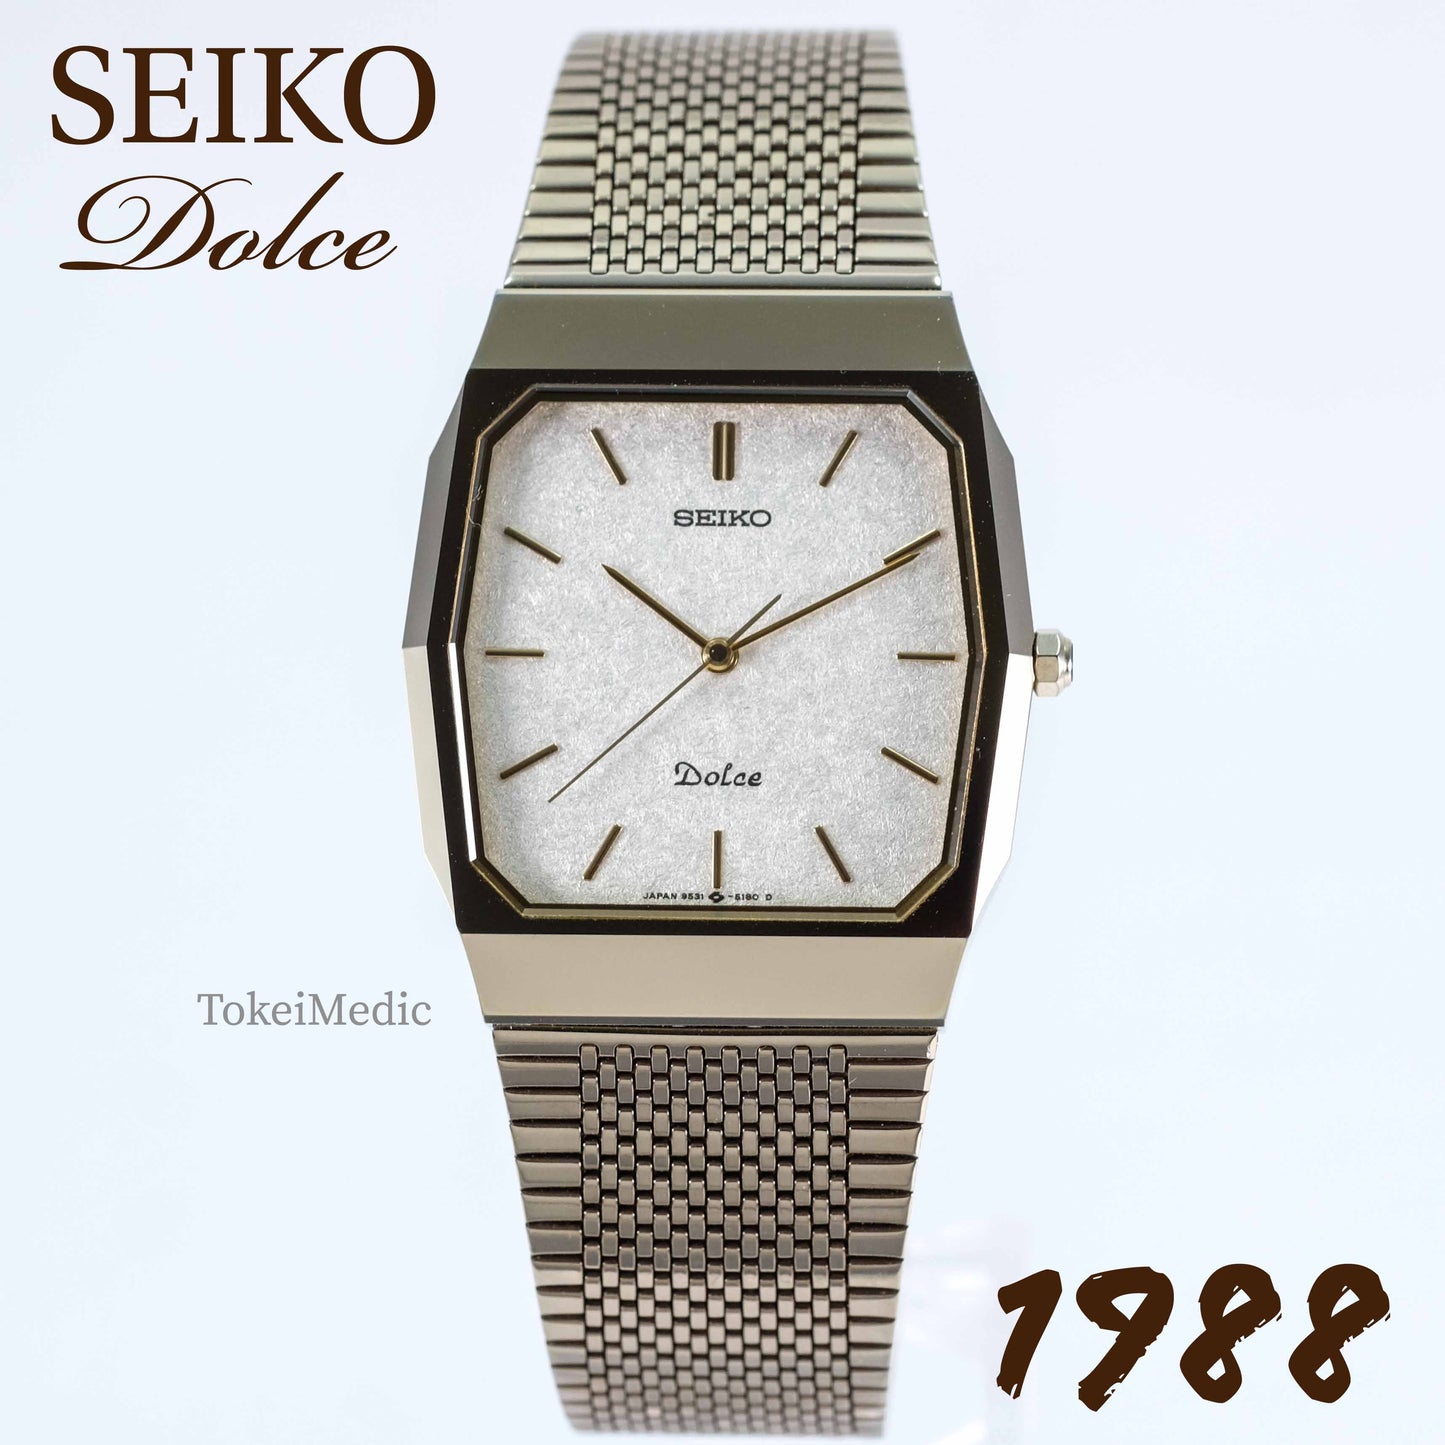 1988 Seiko Dolce 9531-5150